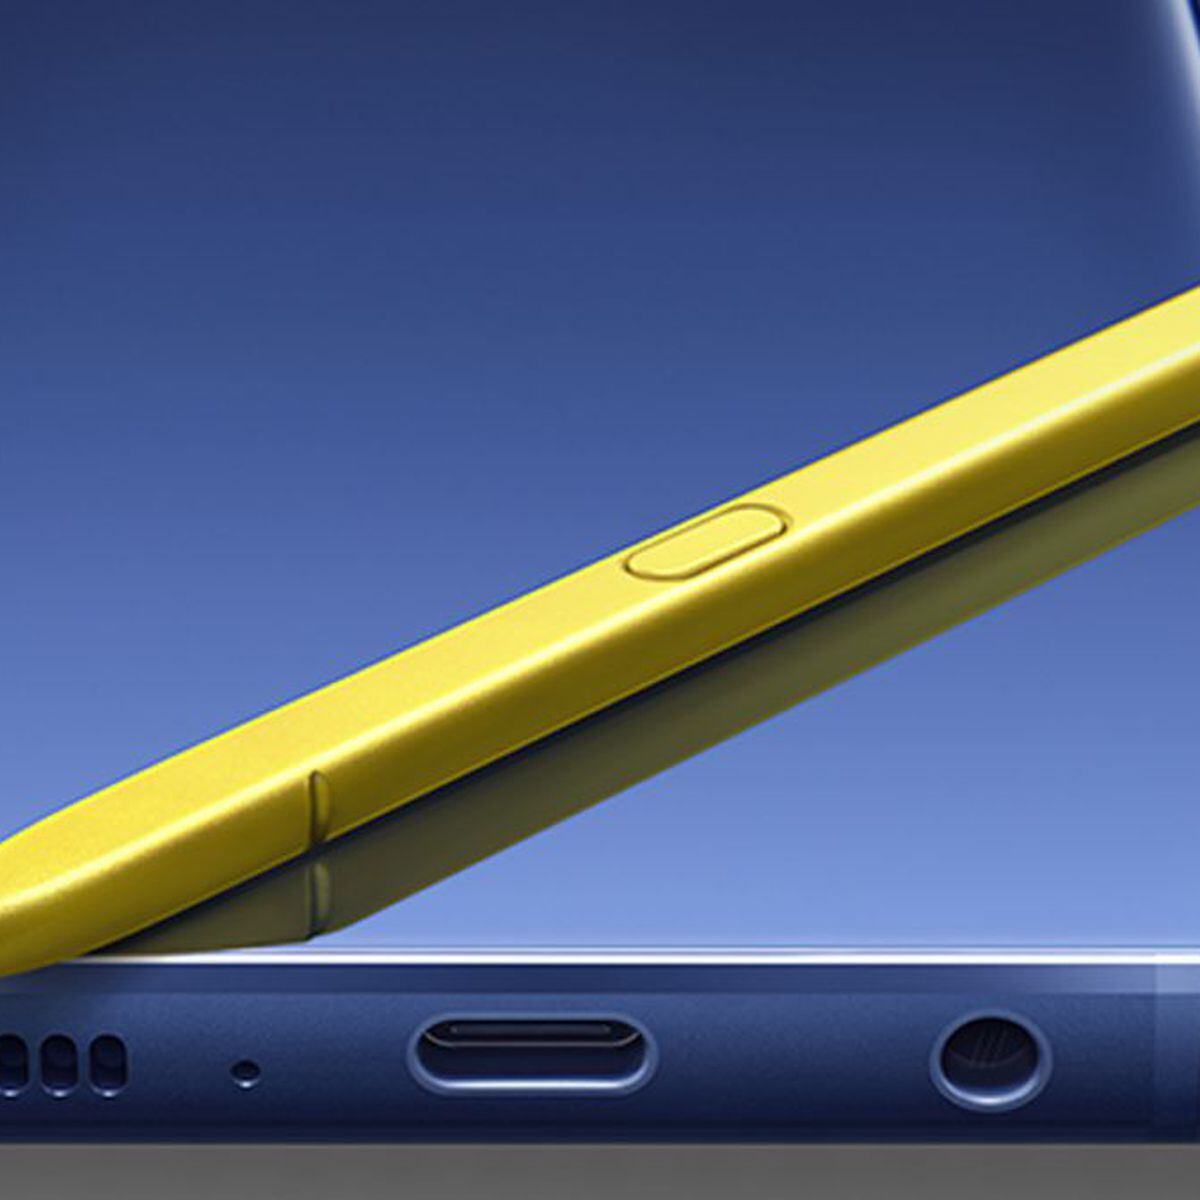 Samsung pone fin a la era del Note: Así son los nuevos Galaxy S22